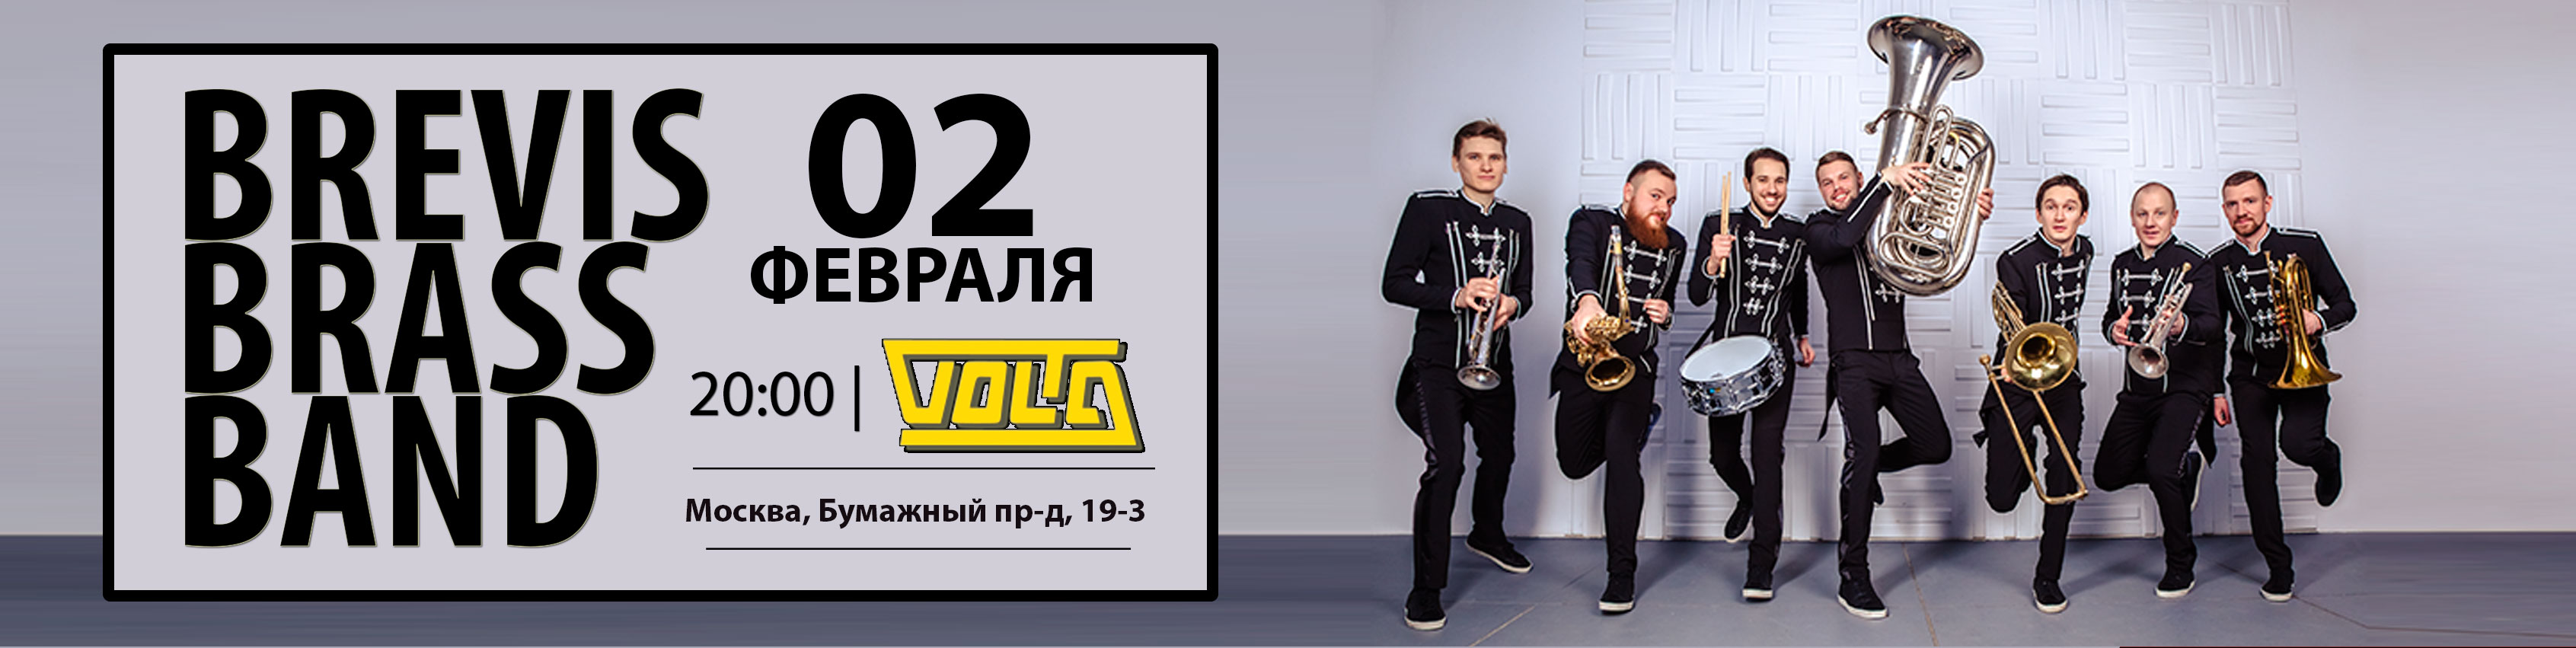 Афиша концерт brevis Brass band 2 февраля 2017 года клуб вольта москва volta